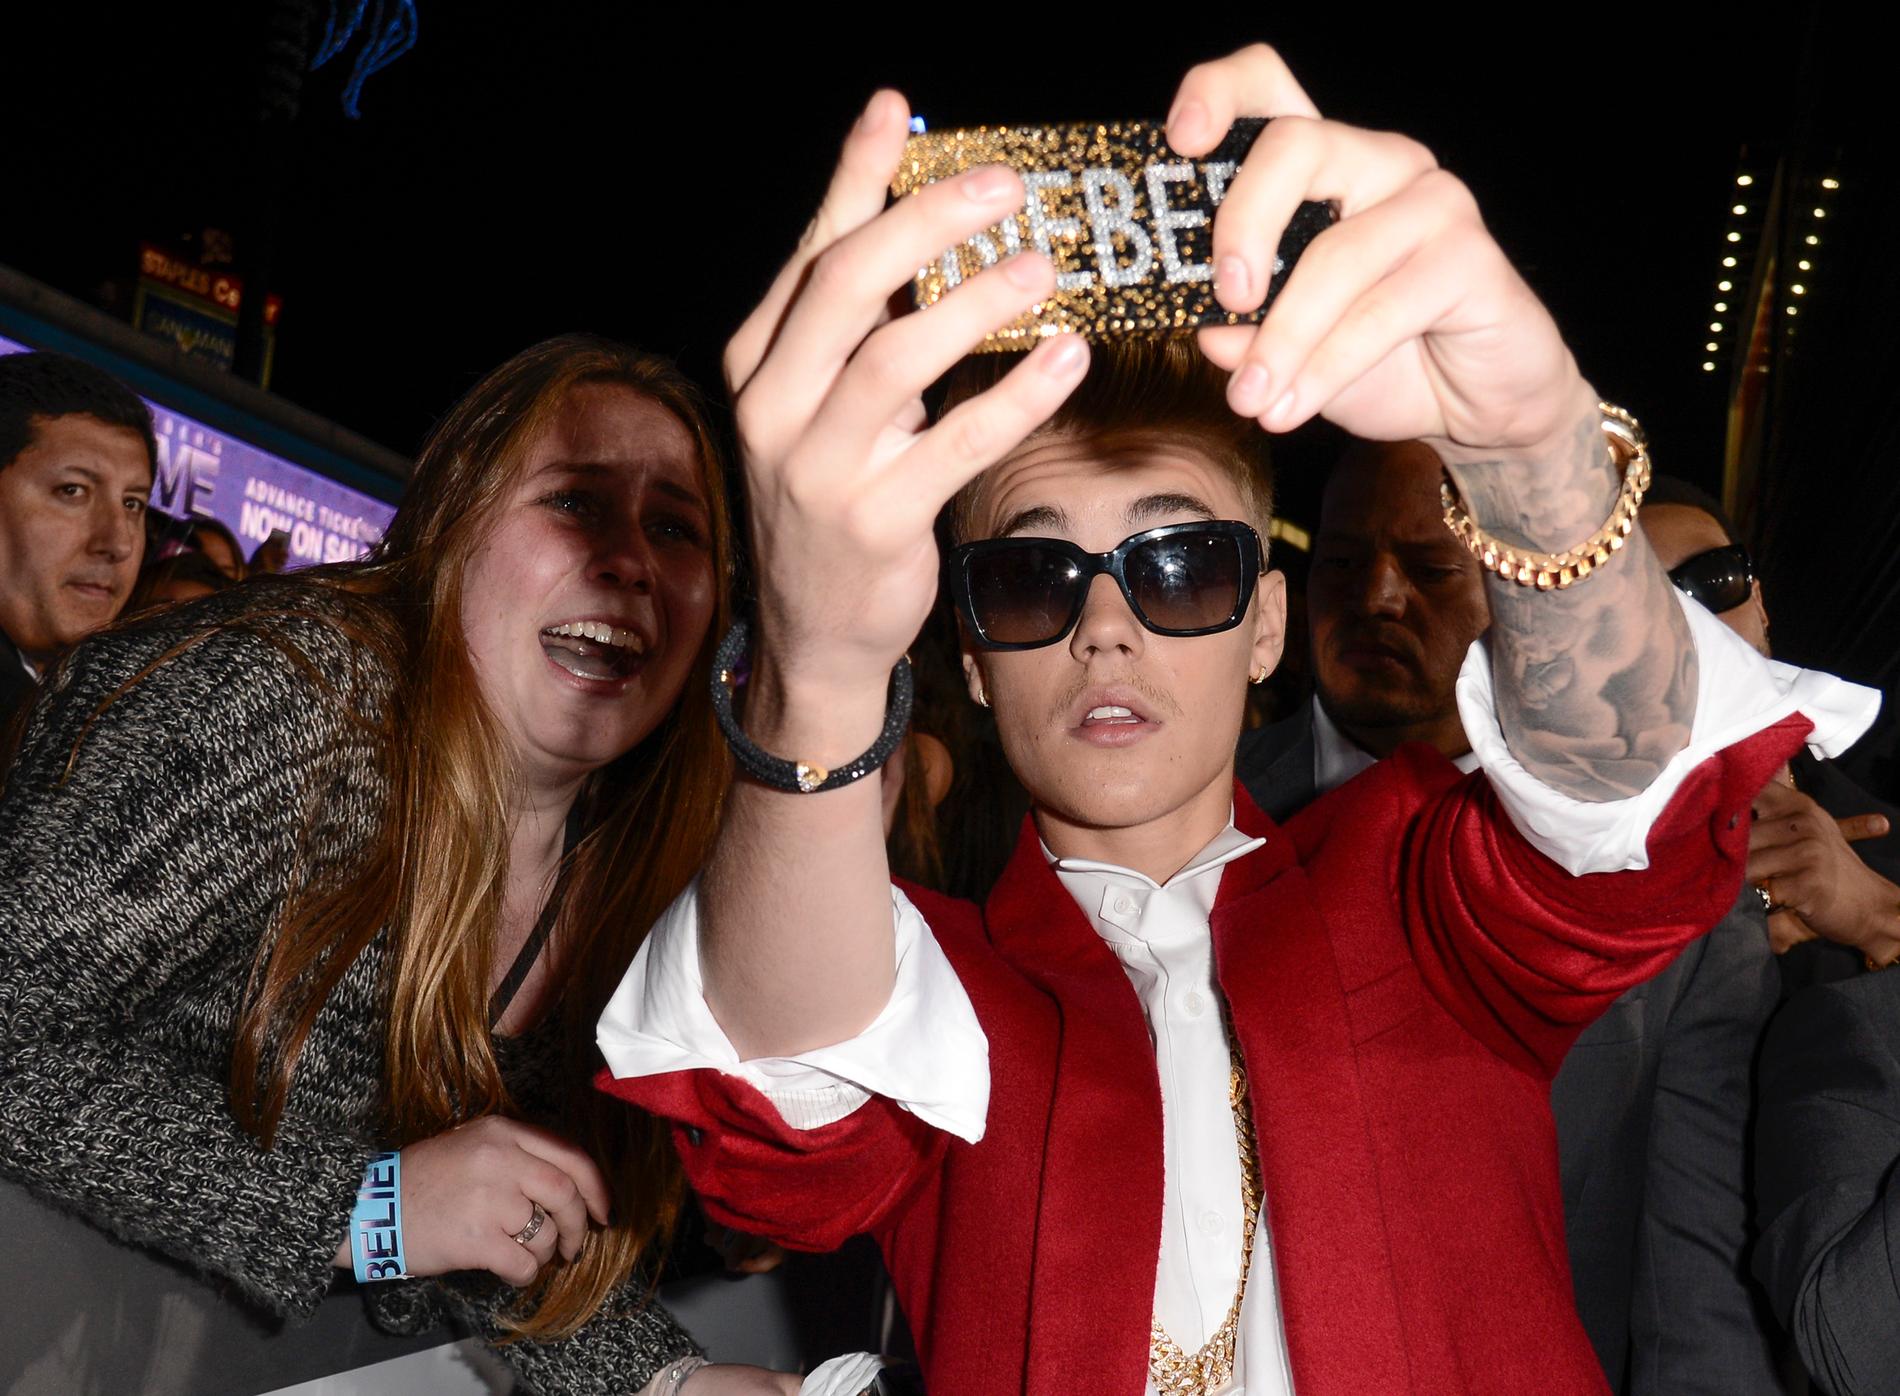 Att lägga upp "selfies" är vanligt bland unga, men för många innebär det också kränkande kommentar, menar antimobbning-organisationen Friends. Här tar Justin Bieber en selfie med ett fan.